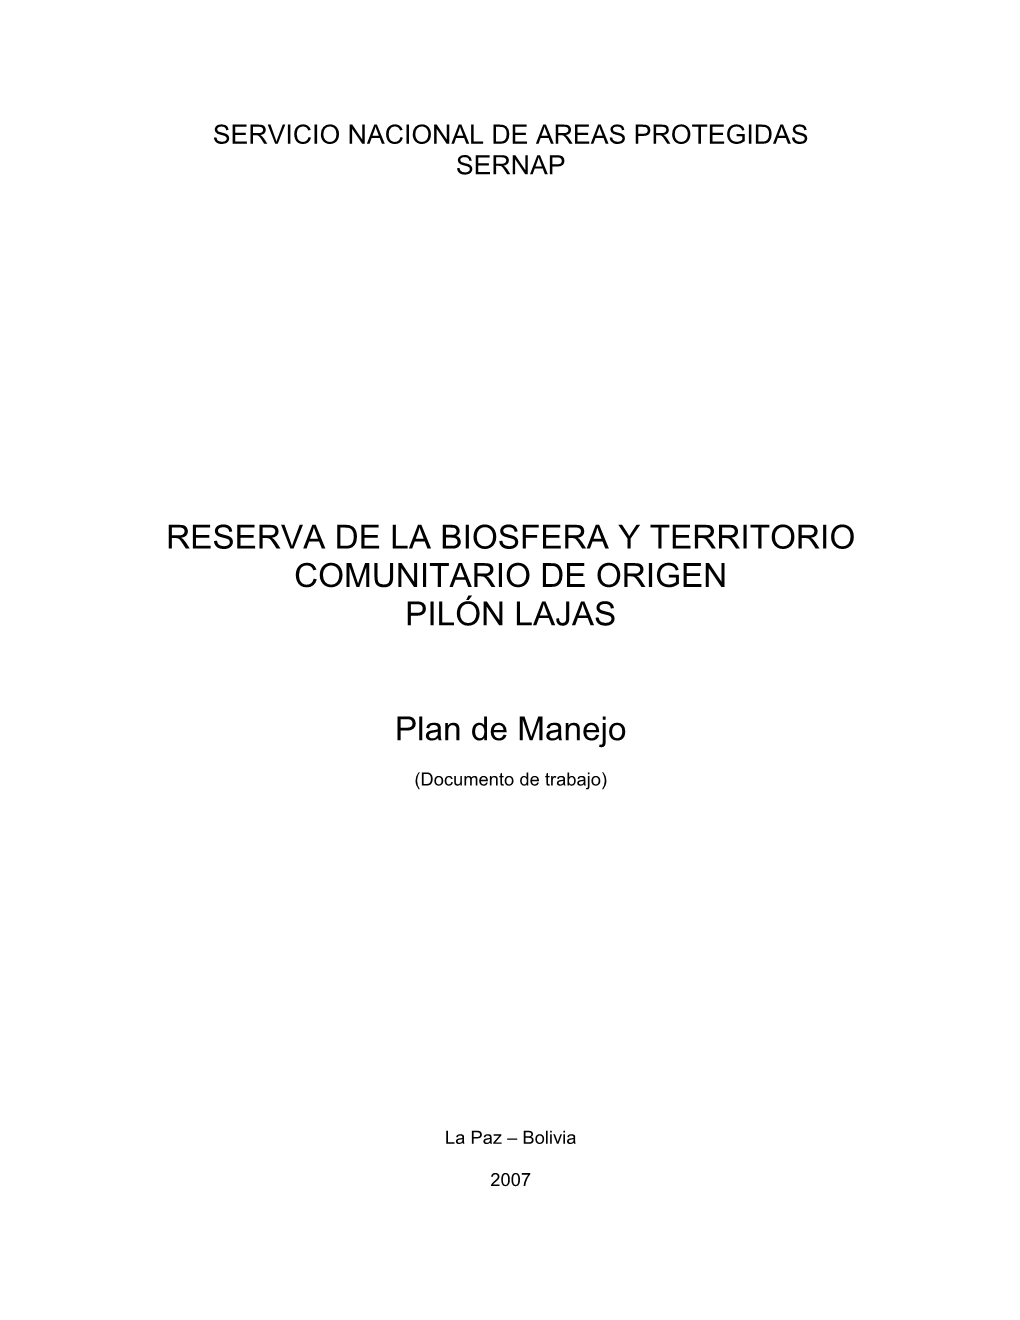 Reserva De La Biosfera Y Territorio Comunitario De Origen Pilón Lajas